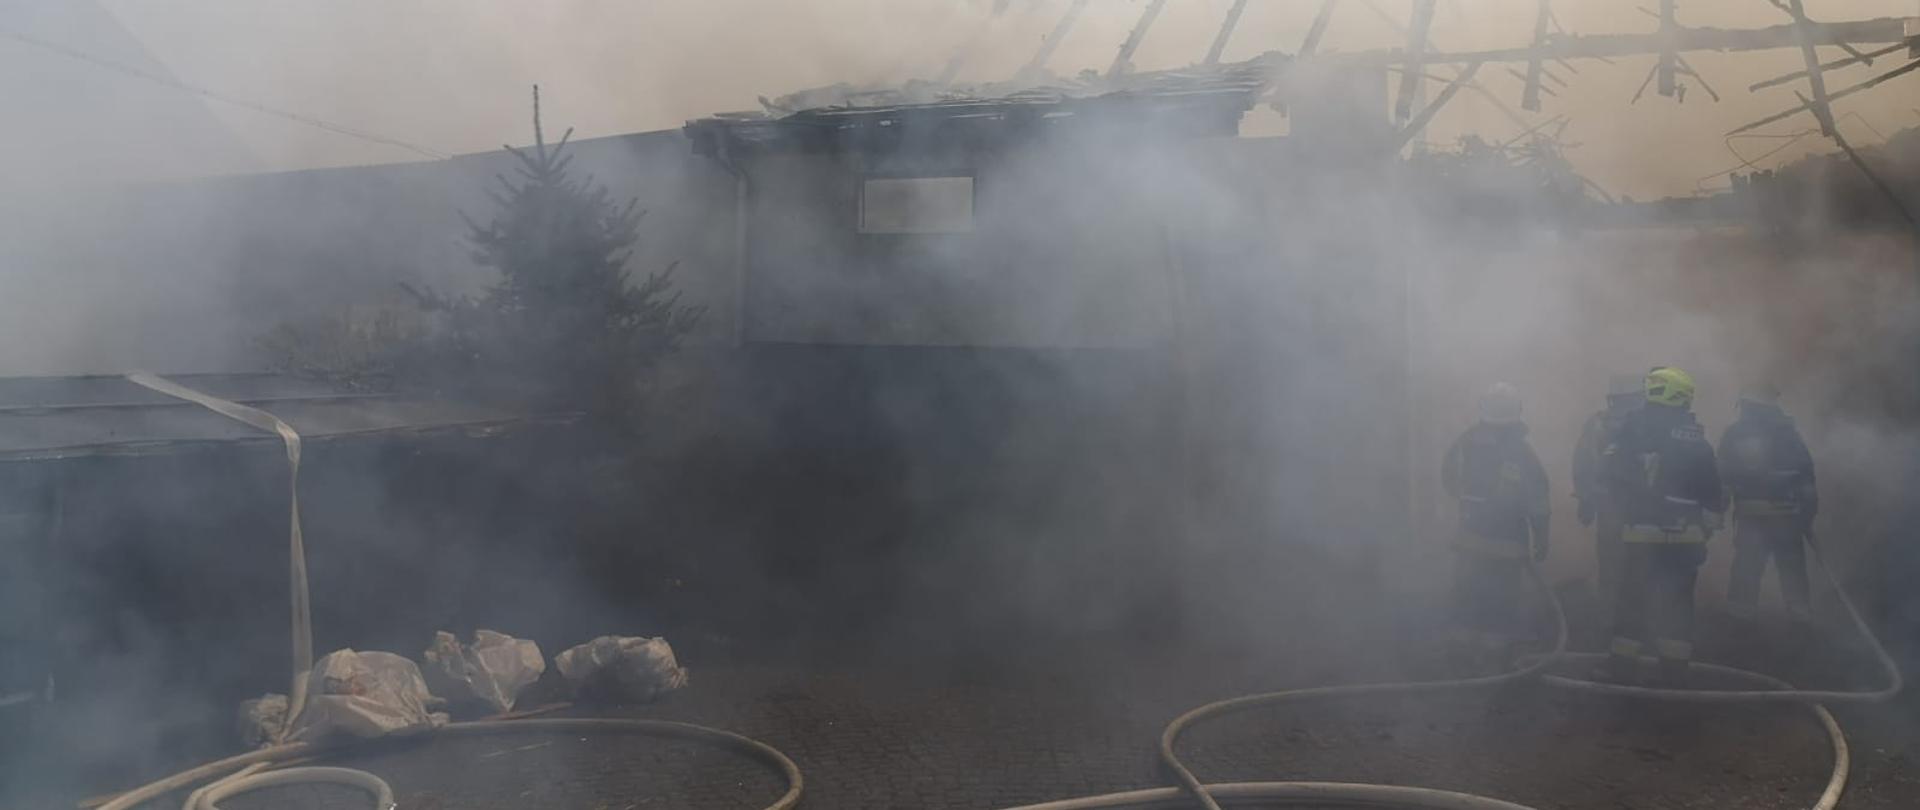 Zdjęcie przedstawia strażaków podczas działań gaśniczych przy pożarze zabudowań gospodarczych w miejscowości Łany.
Na pierwszym planie widoczne odcinki strażackie napełnione wodą. W oddali w dymie widoczny spalony budynek i spaloną więźbę dachową.